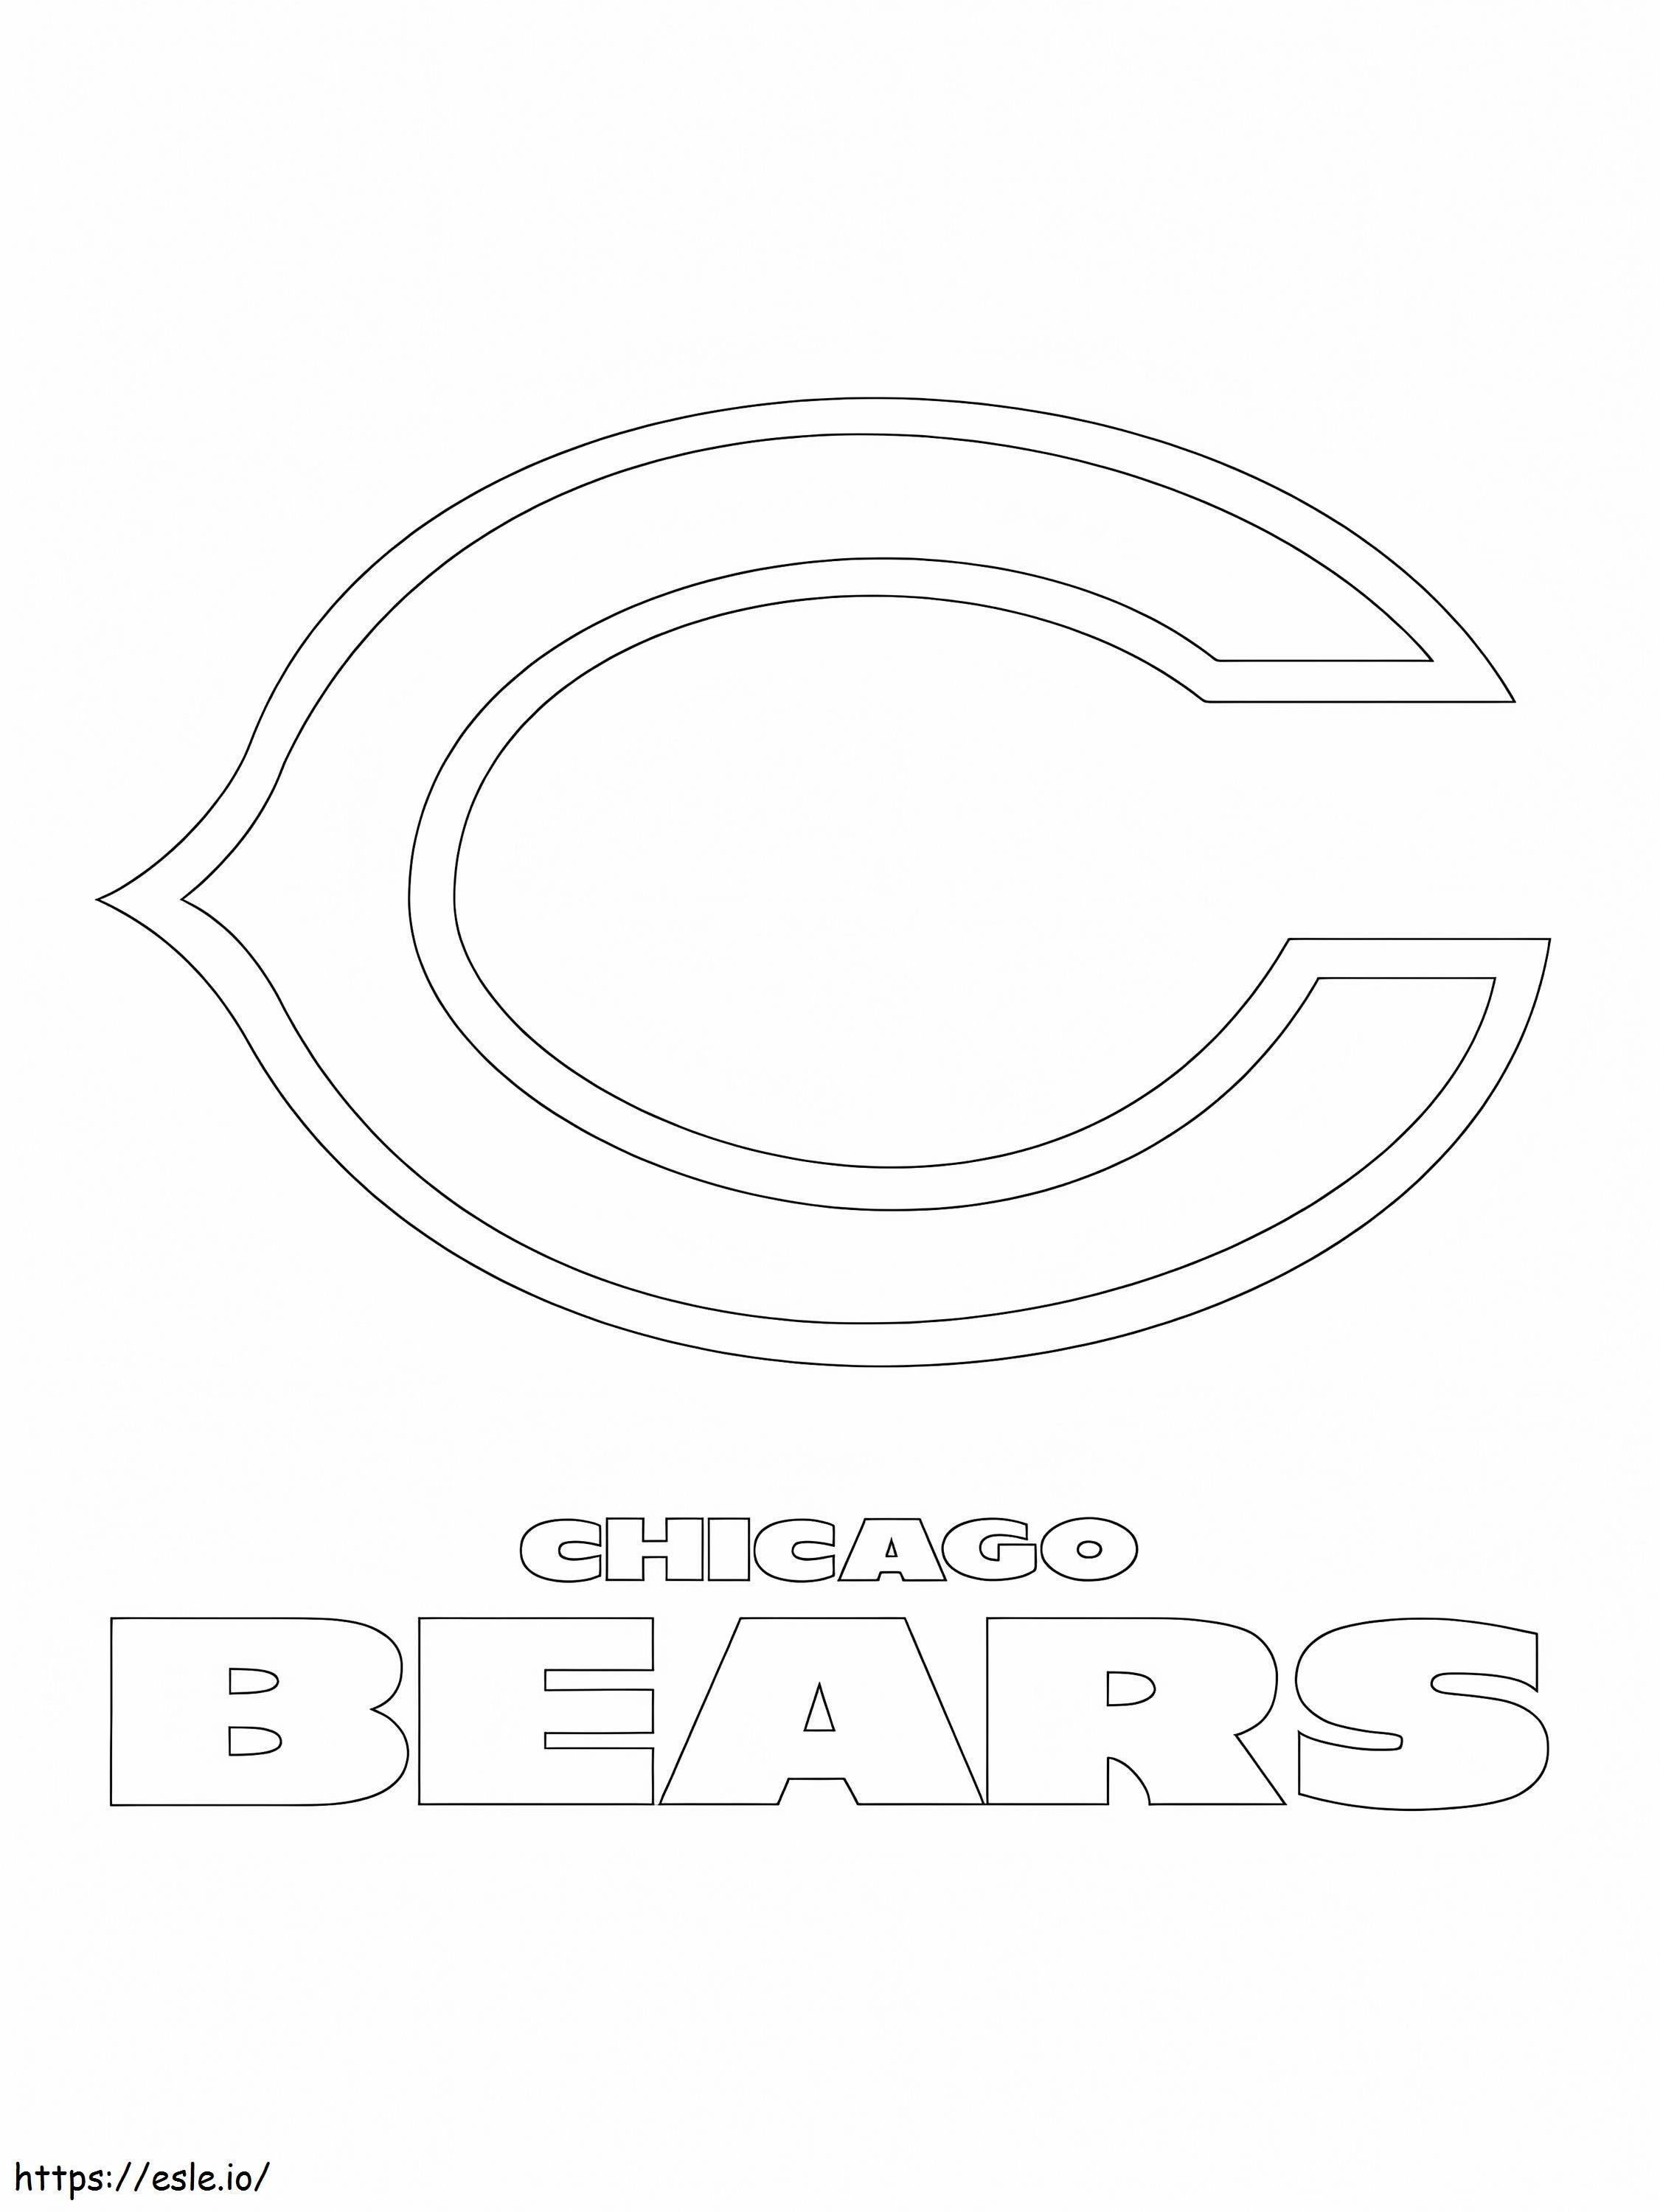 Chicago Bears-logo kleurplaat kleurplaat